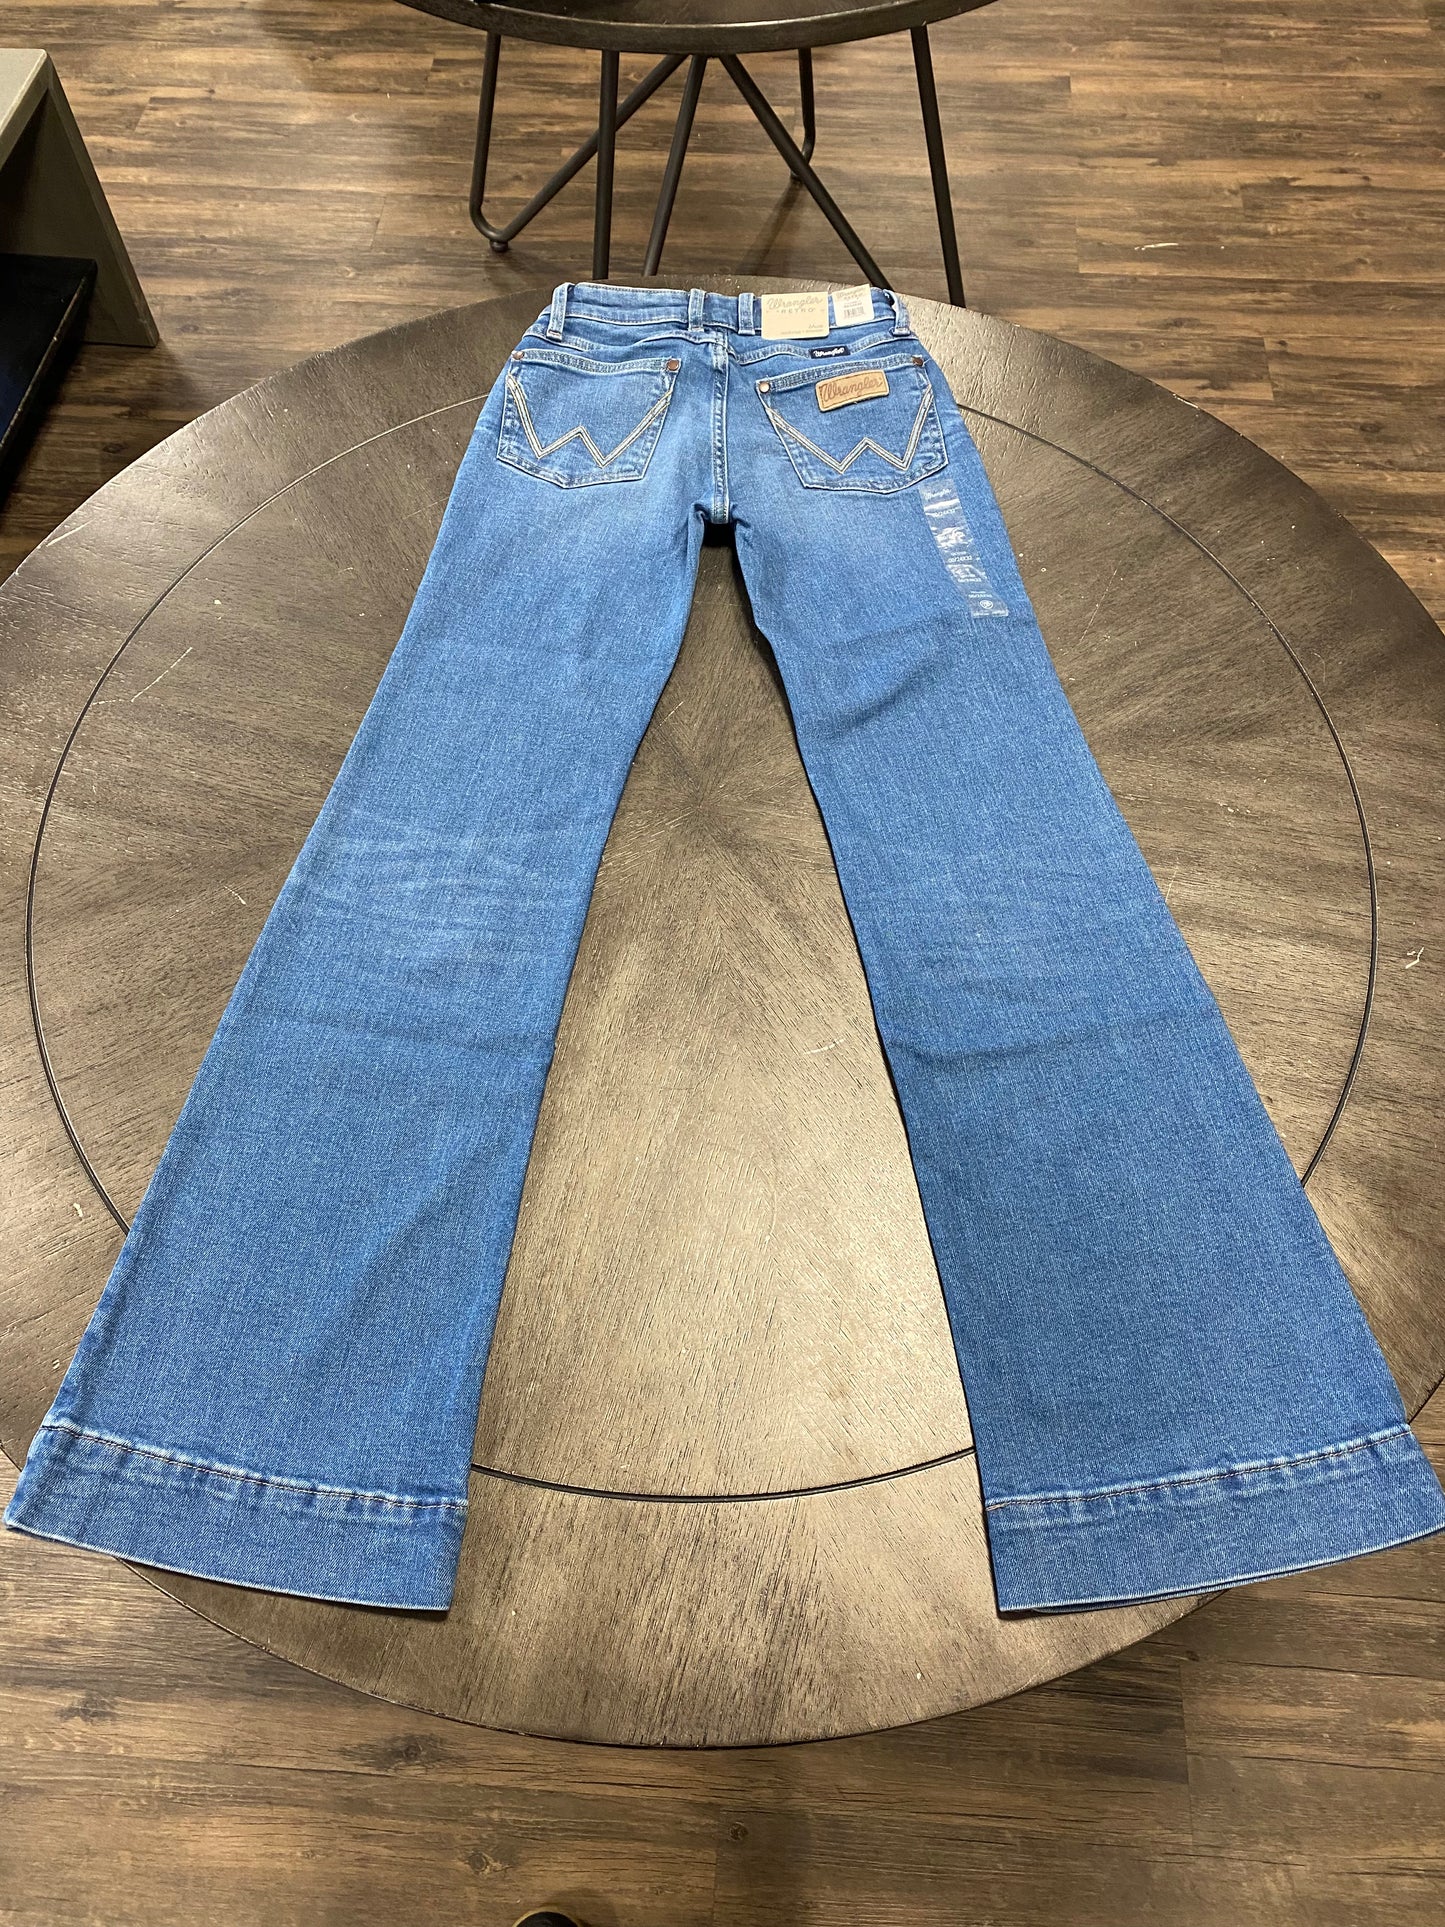 
                  
                    112346617- Women's Wrangler Mae Trouser Mid Rise Jean
                  
                